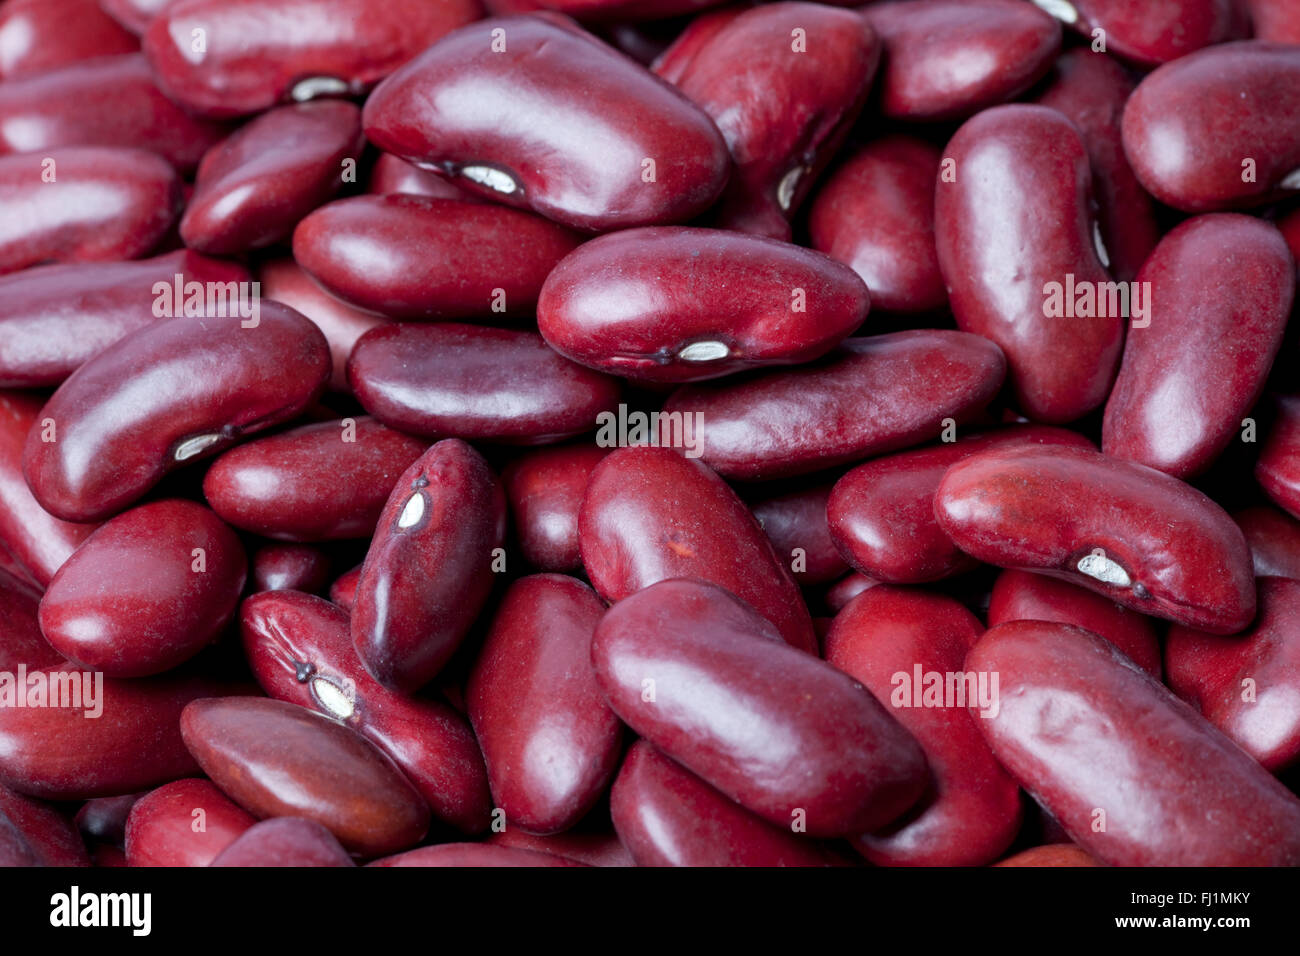 Raw red kidney beans full frame Stock Photo